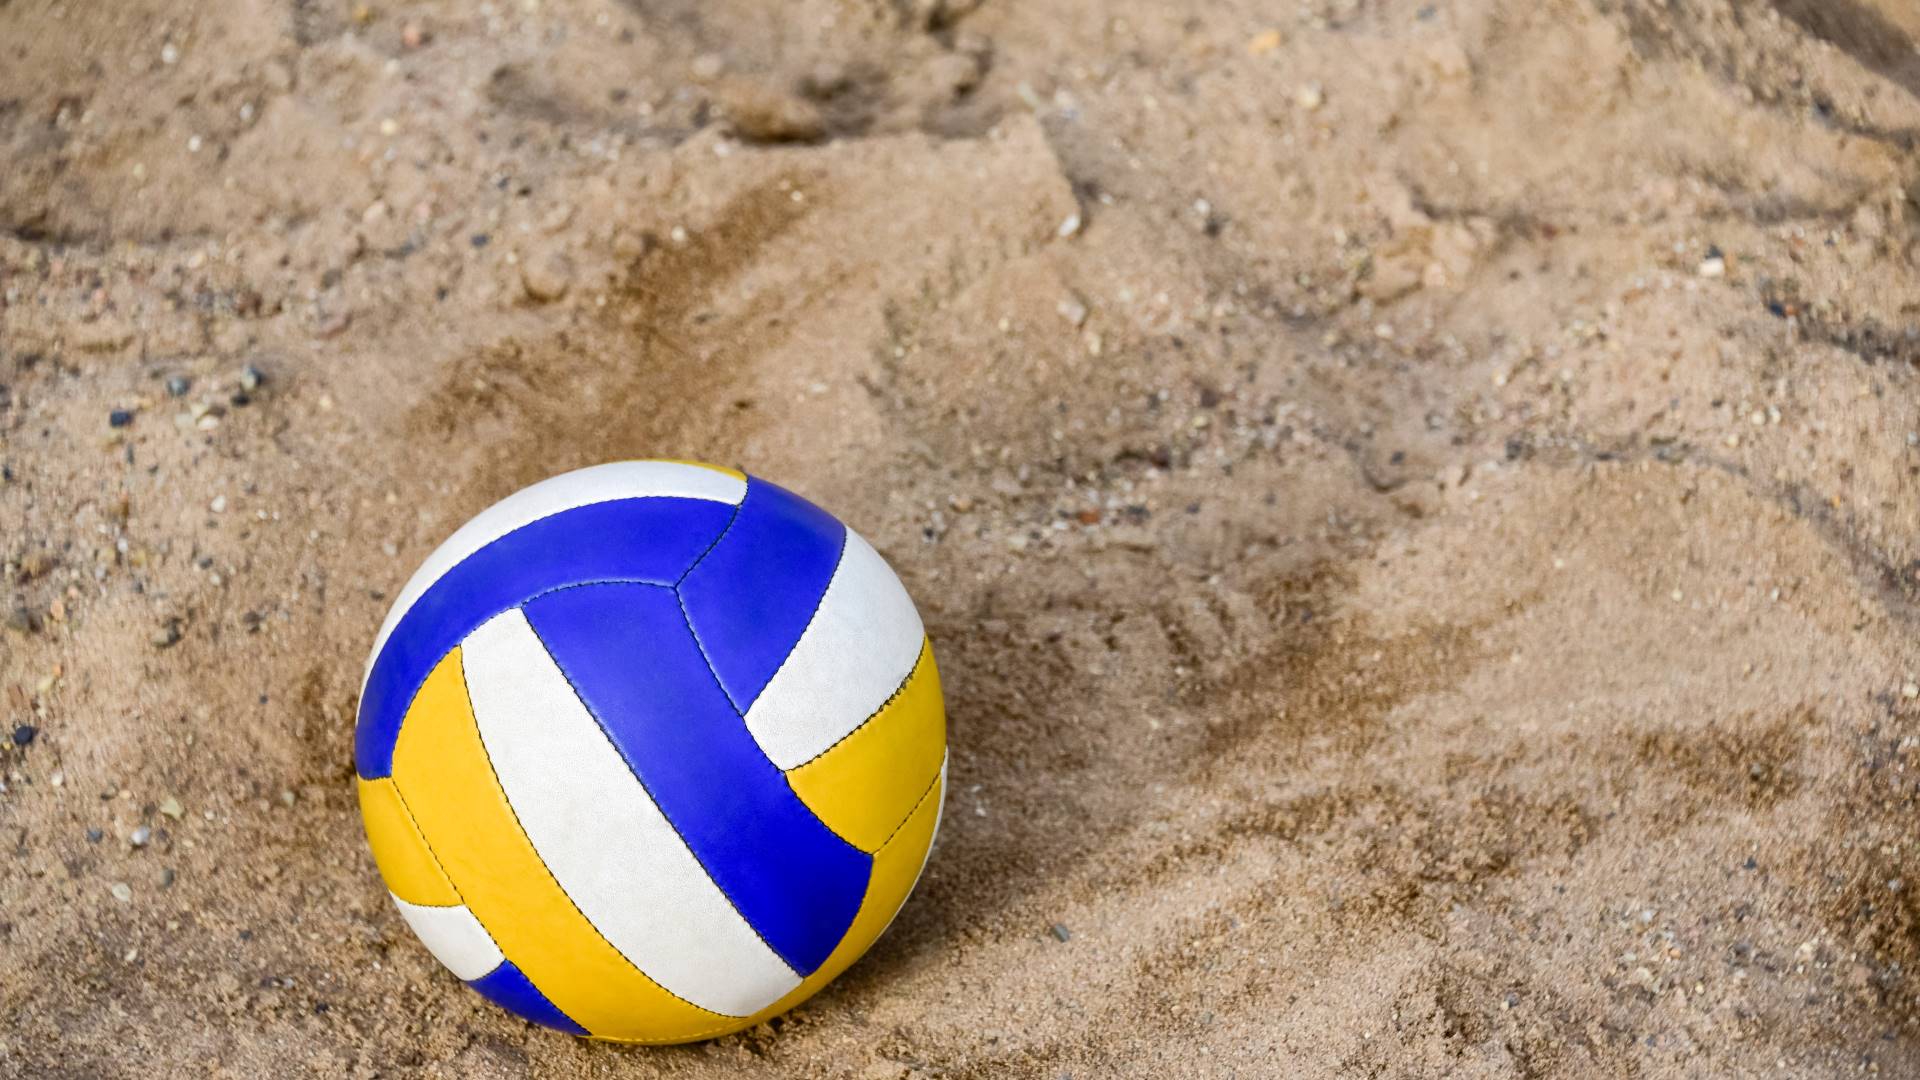 Siatkówka plażowa kontra klasyczna siatkówka: Różnice i podobieństwa